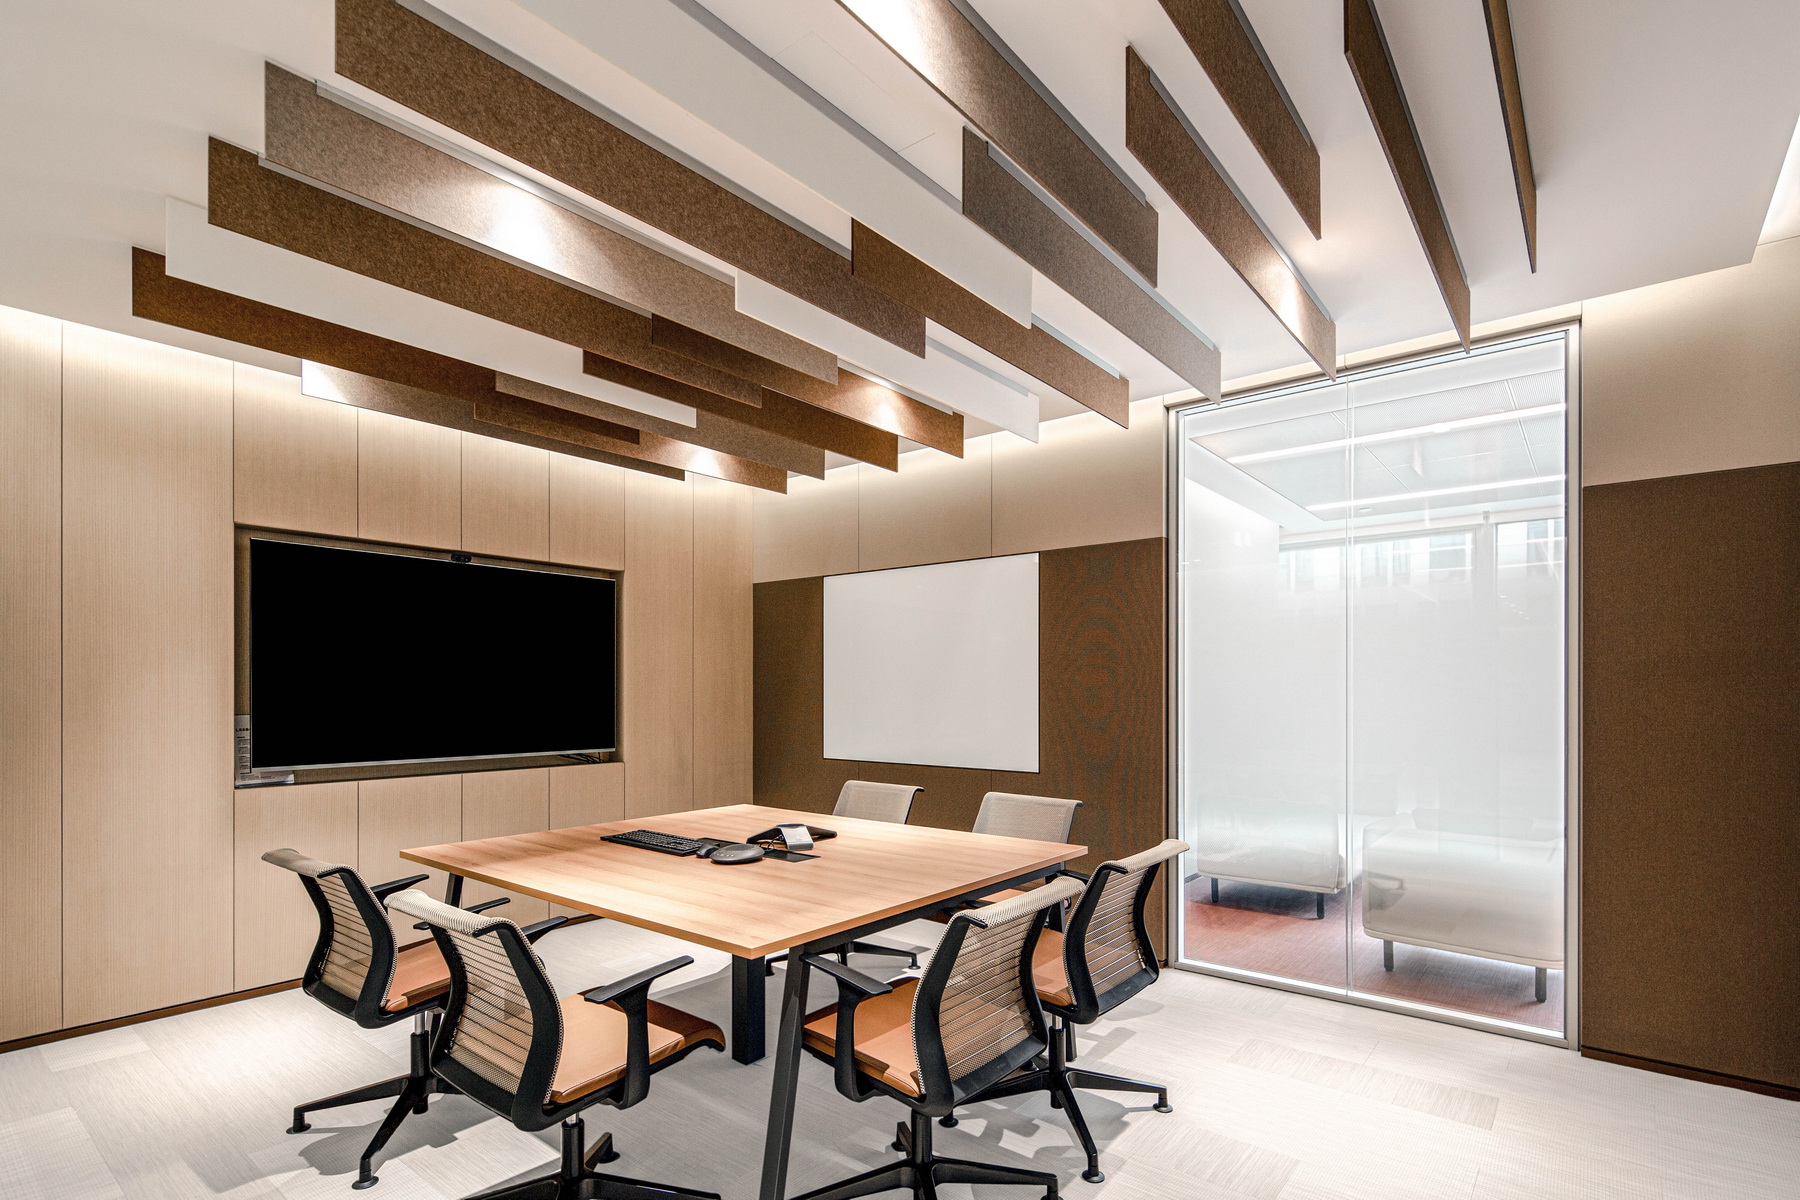 柳沈律师事务所室内办公空间  室内改造设计 / CCDI 智室内设计